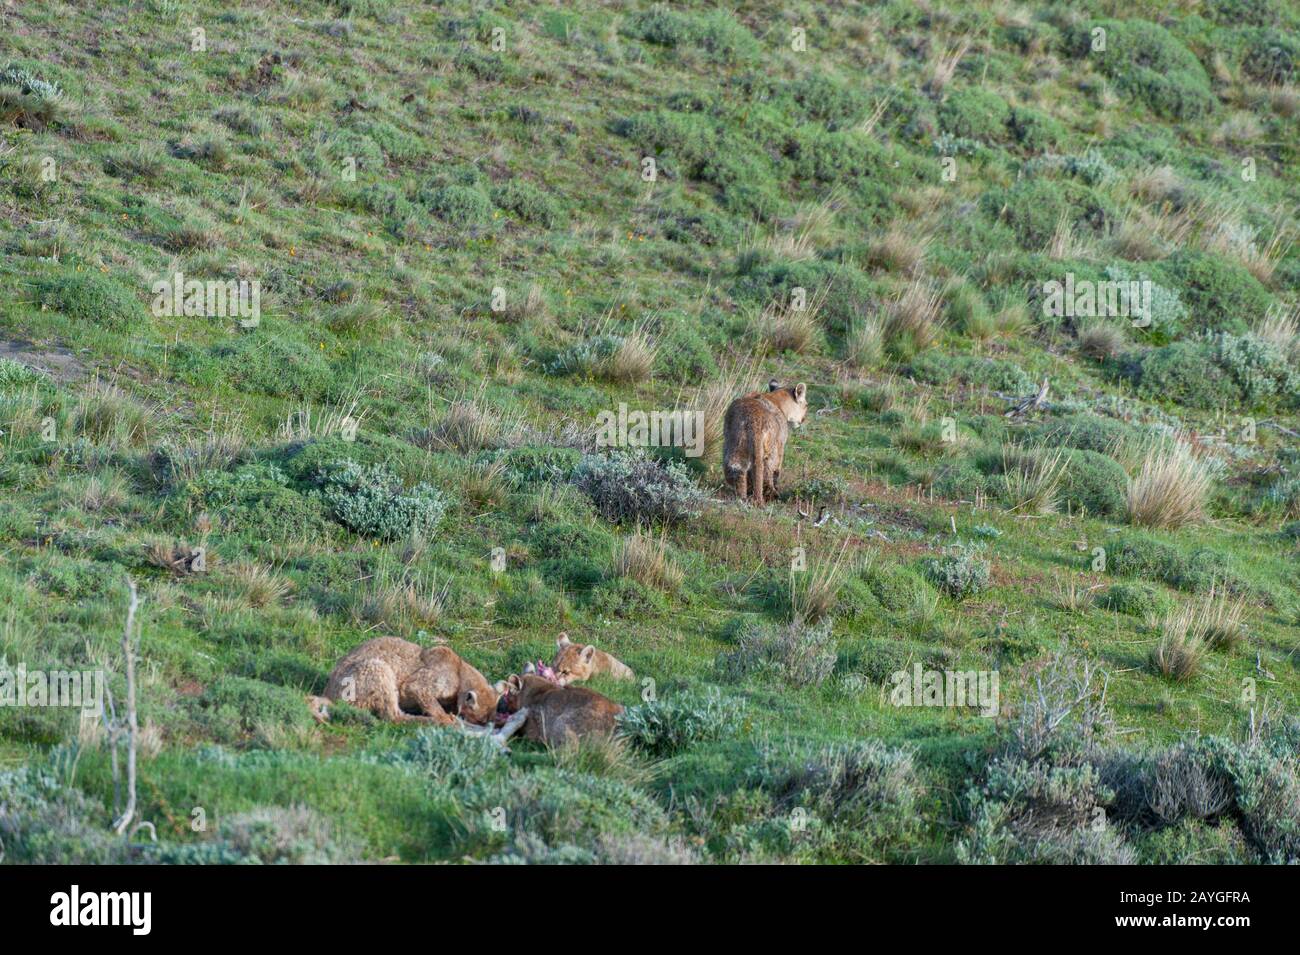 Trois oursons de Puma (couleur de Puma) d'environ 6 mois sur un bébé de Guanaco tuer avec la mère (à droite) en train de courir (les Pumas sont également connus sous le nom de lion de montagne, c Banque D'Images